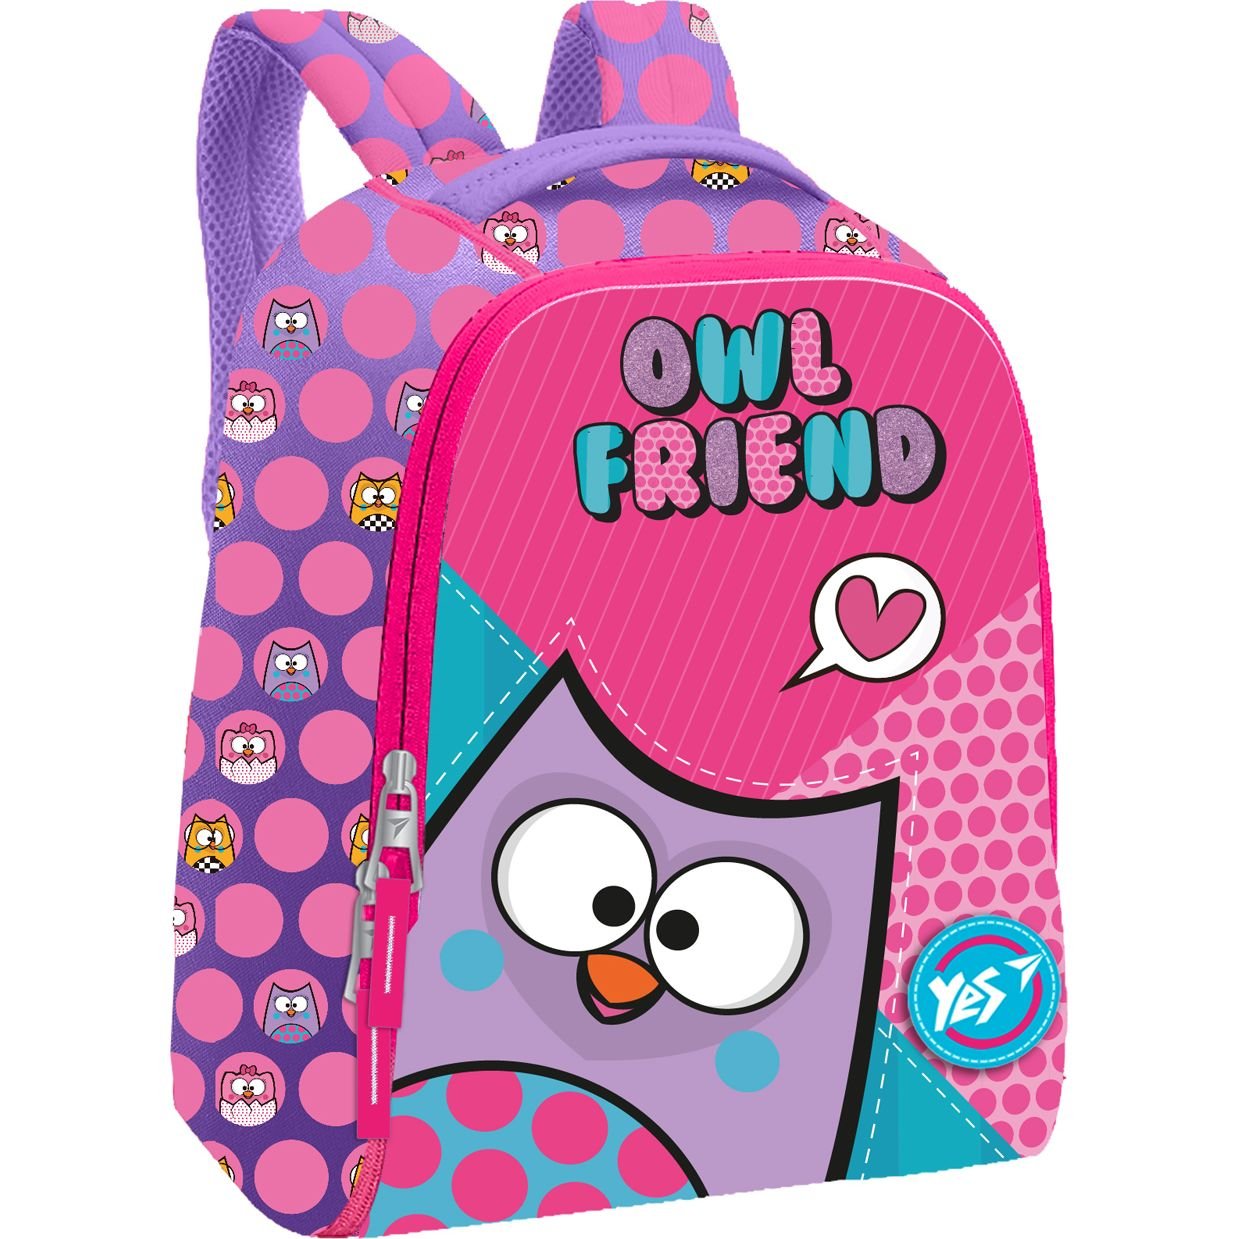 Рюкзак дитячий Yes К-37 Owl Friend, розовый с фиолетовым (558525) - фото 1